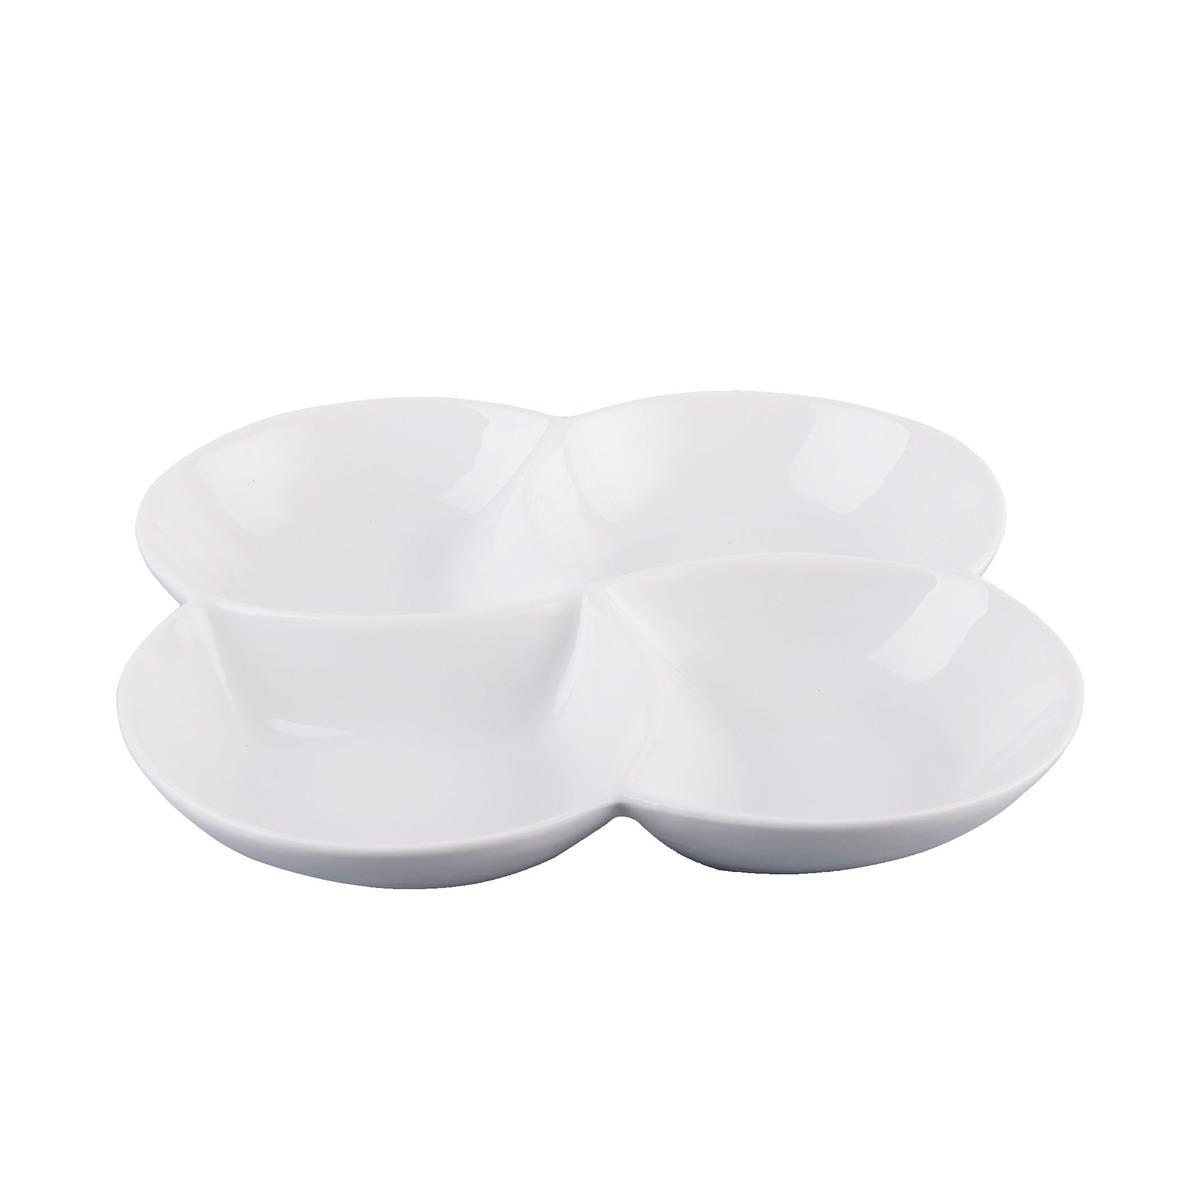 Plat 4 compartiments en porcelaine - 22 x 22 x H 3 cm - Blanc